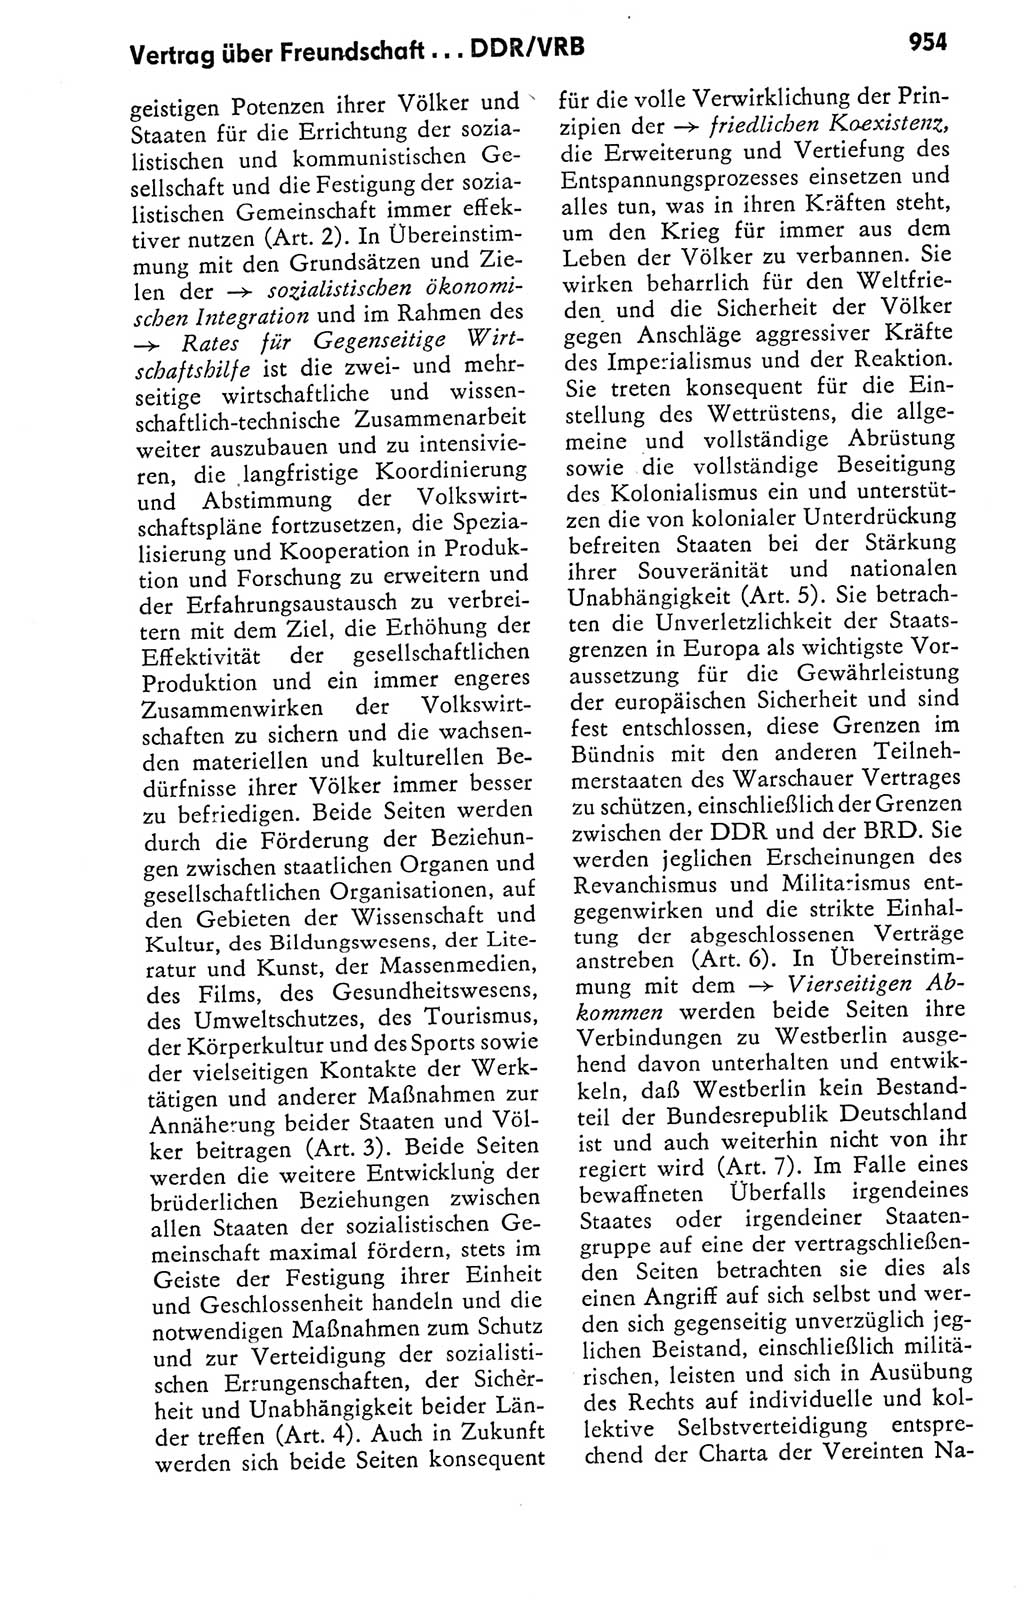 Kleines politisches Wörterbuch [Deutsche Demokratische Republik (DDR)] 1978, Seite 954 (Kl. pol. Wb. DDR 1978, S. 954)